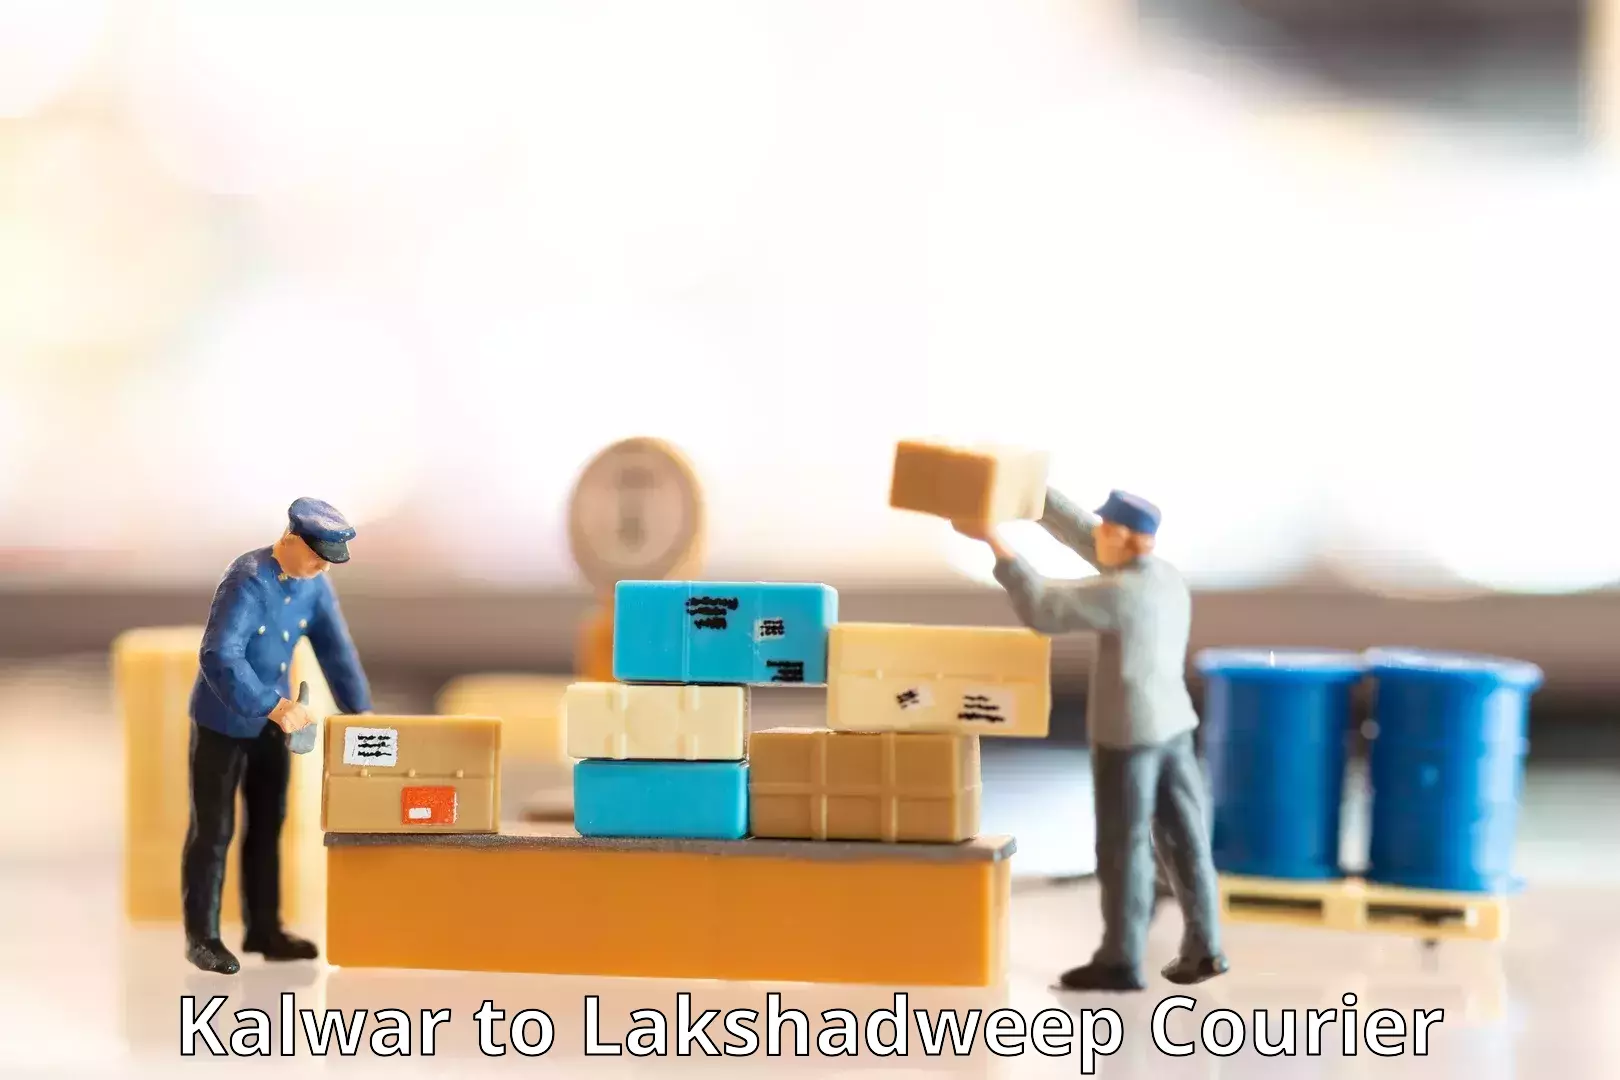 Professional courier handling Kalwar to Lakshadweep